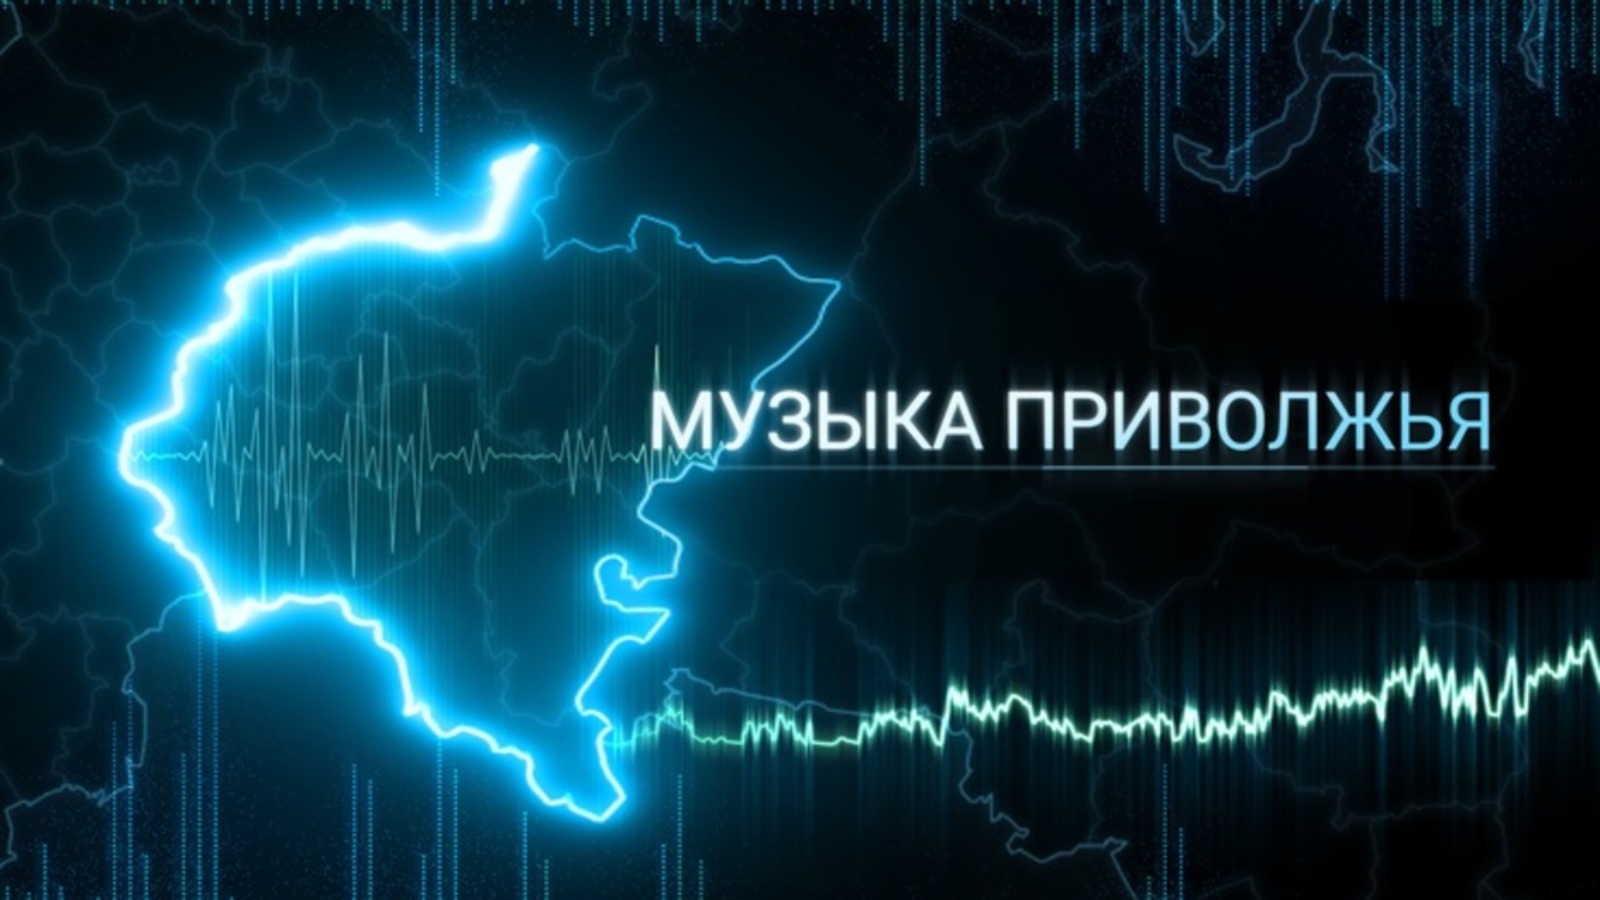 Уникальный аудиовизуальный альбом «Музыка Приволжья» появится в ПФО